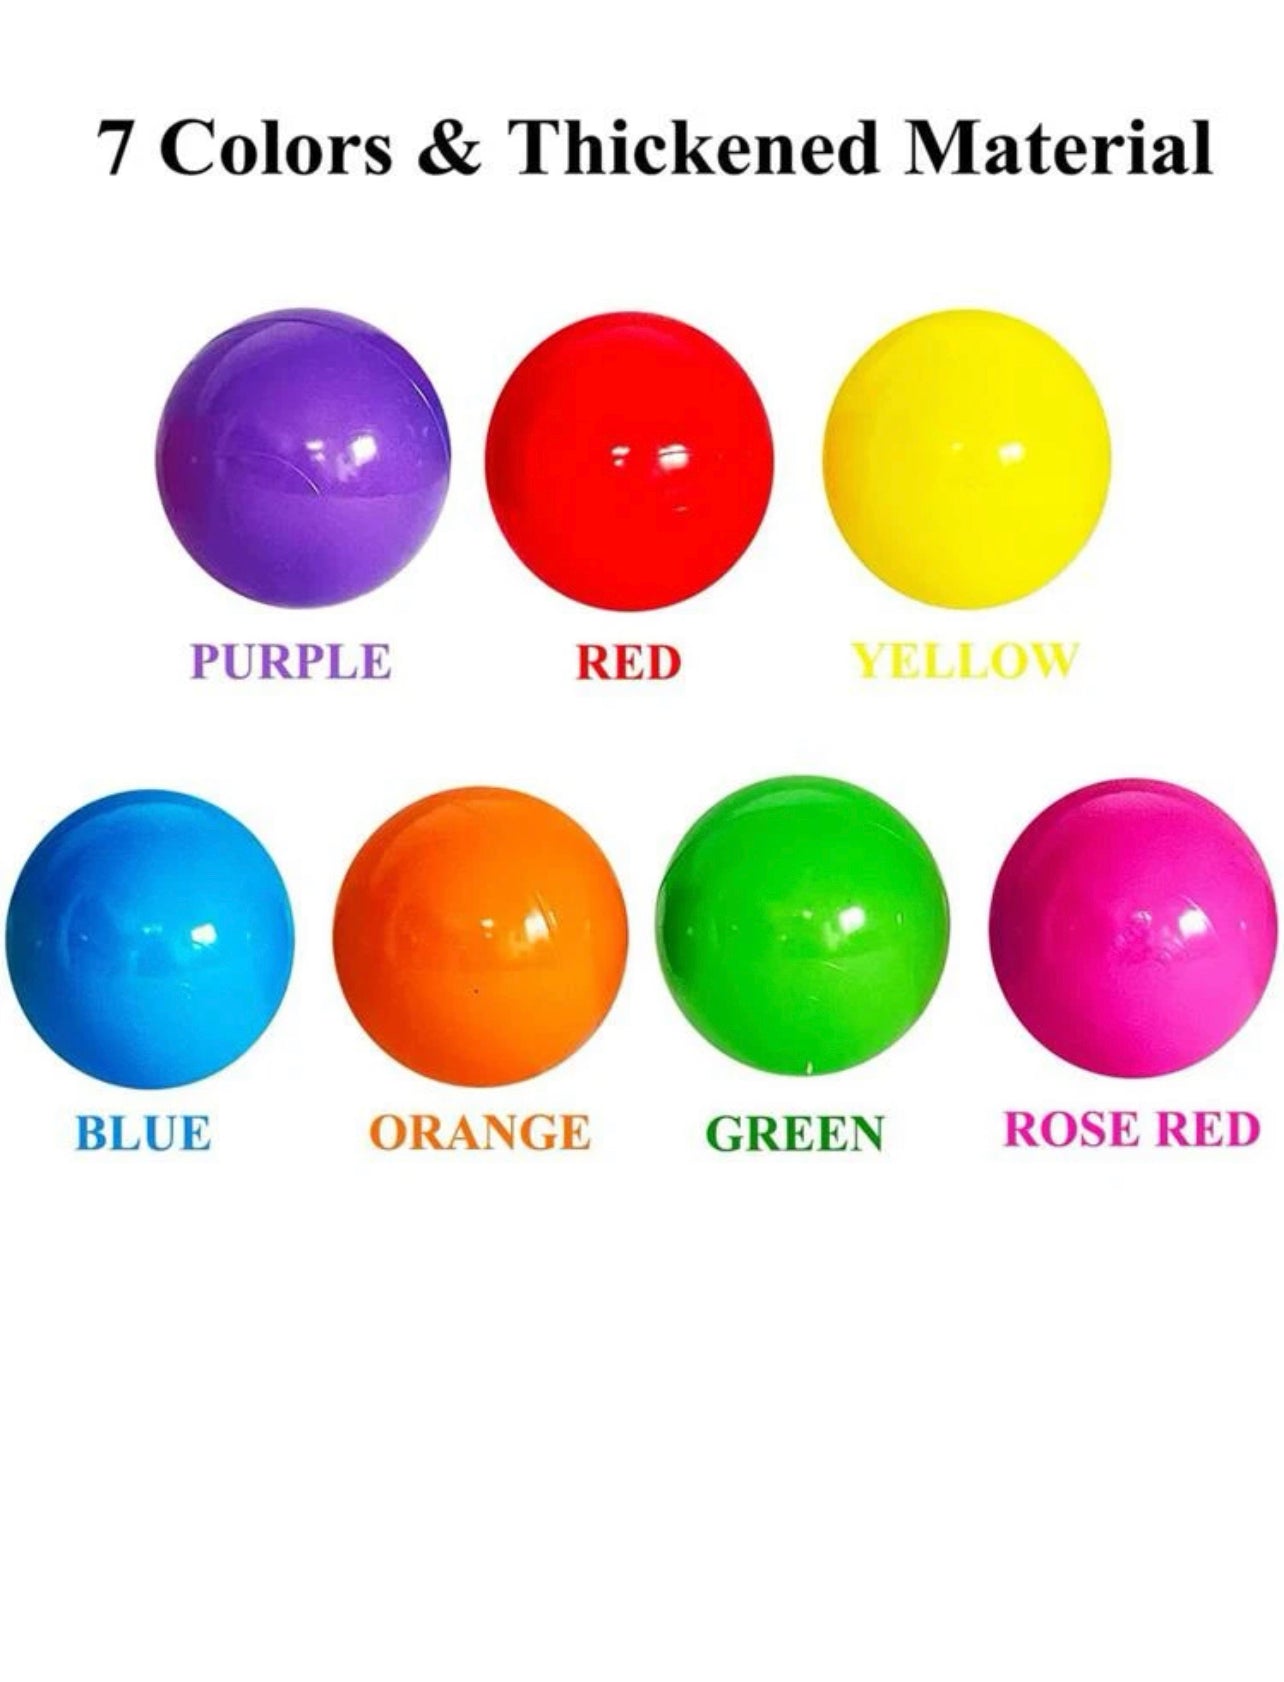 50pcs of random color balls.